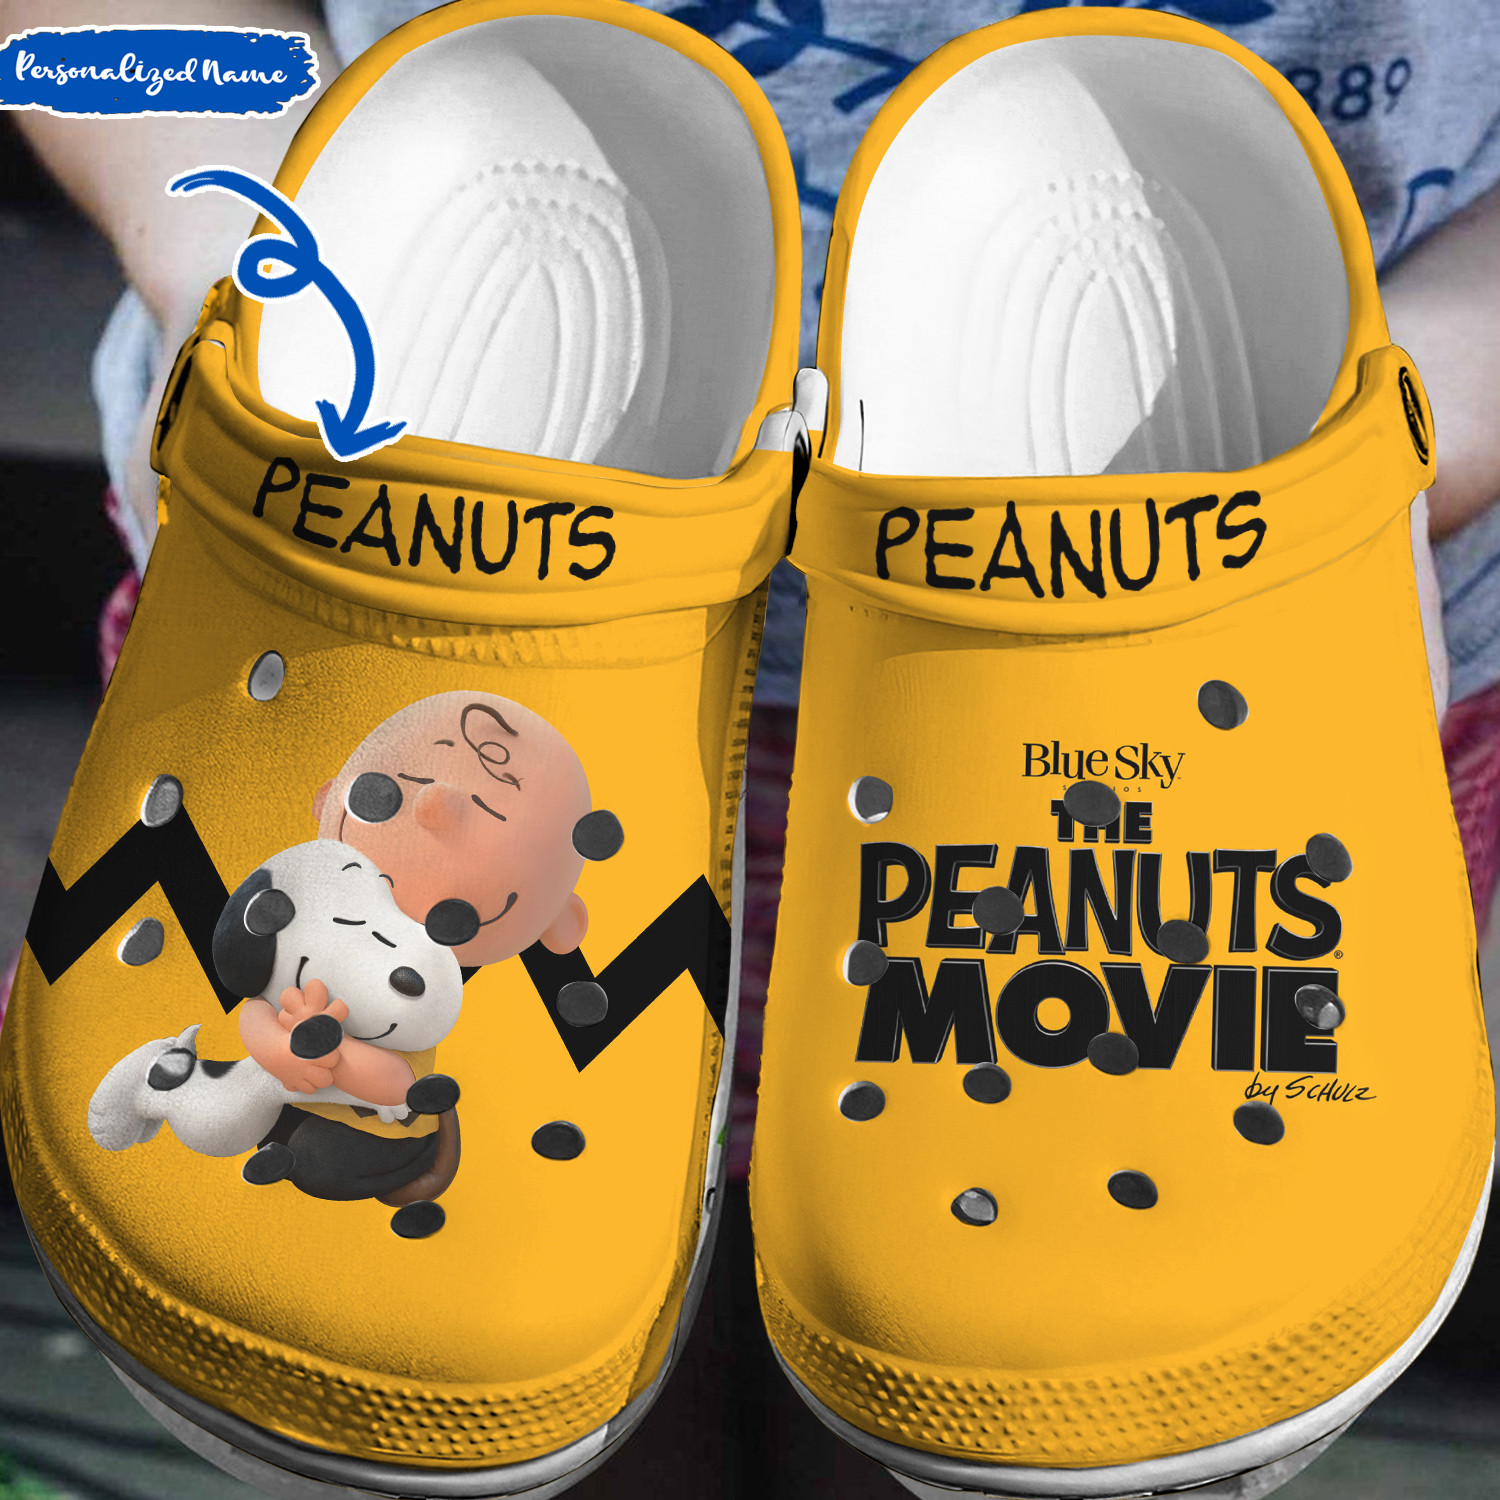 Snoopy Peanuts Crocs 3D Clog Shoes